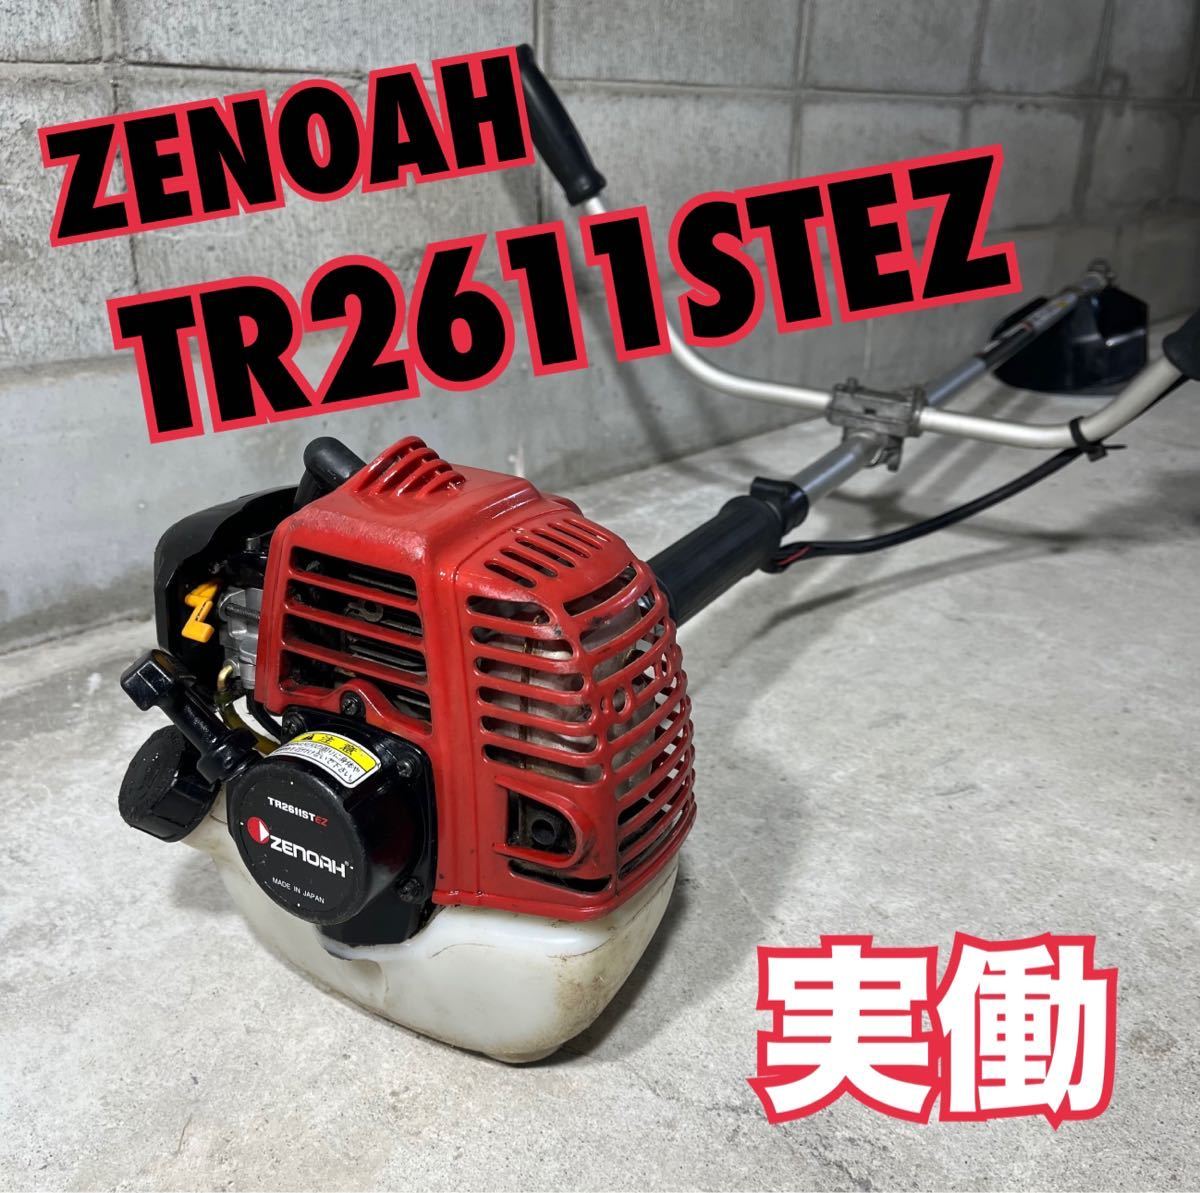 ゼノア ZENOAH TR2611ST EZ 刈り払い機 肩掛け式草刈機 実働品 エンジン芝刈機_画像1